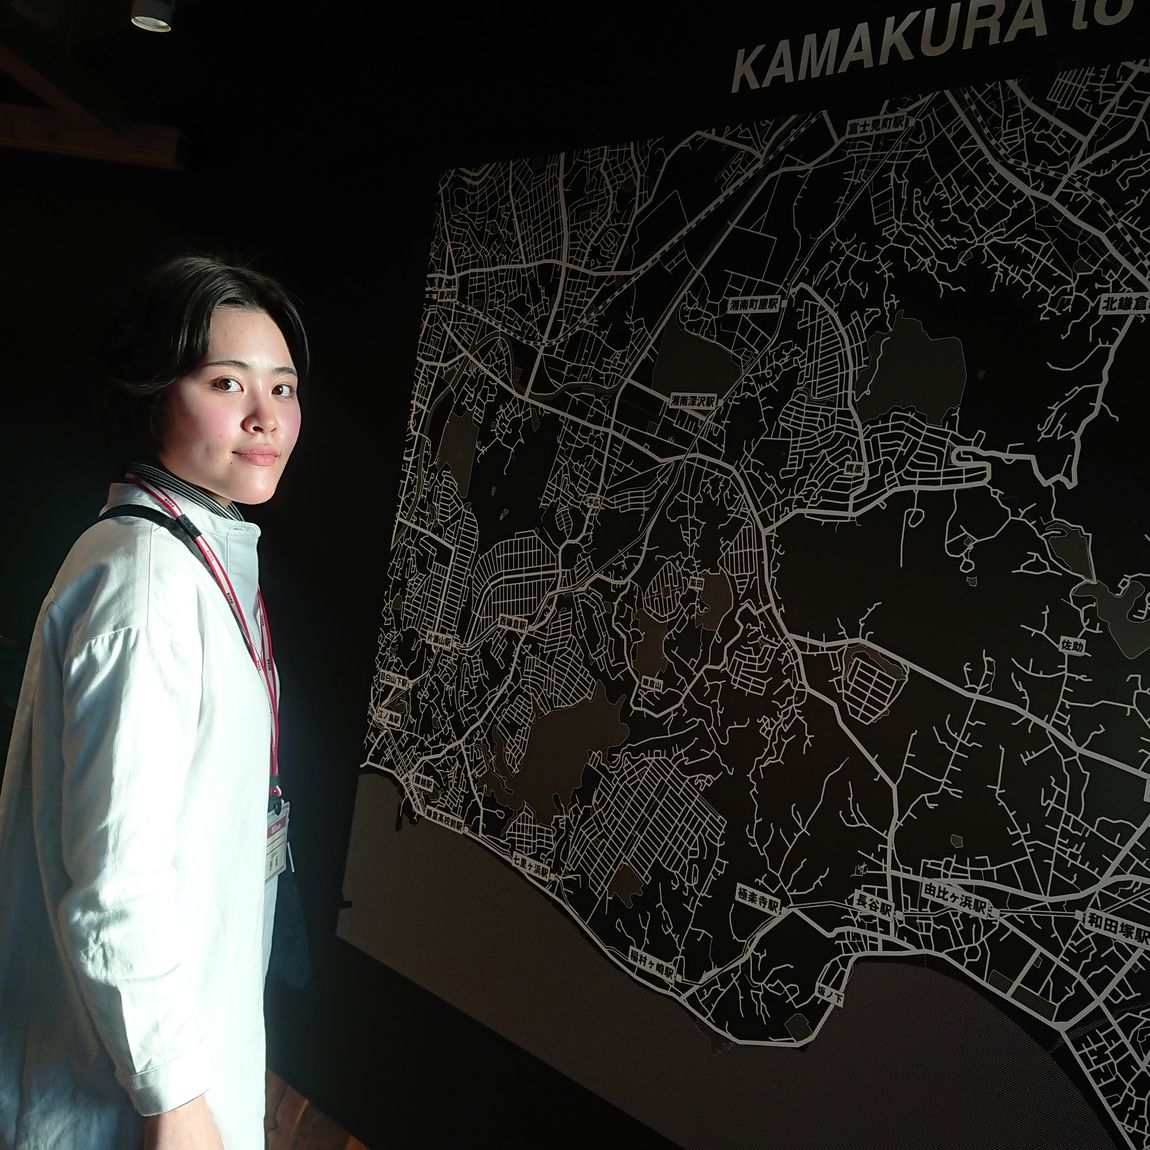 鎌倉マップとスタッフ写真